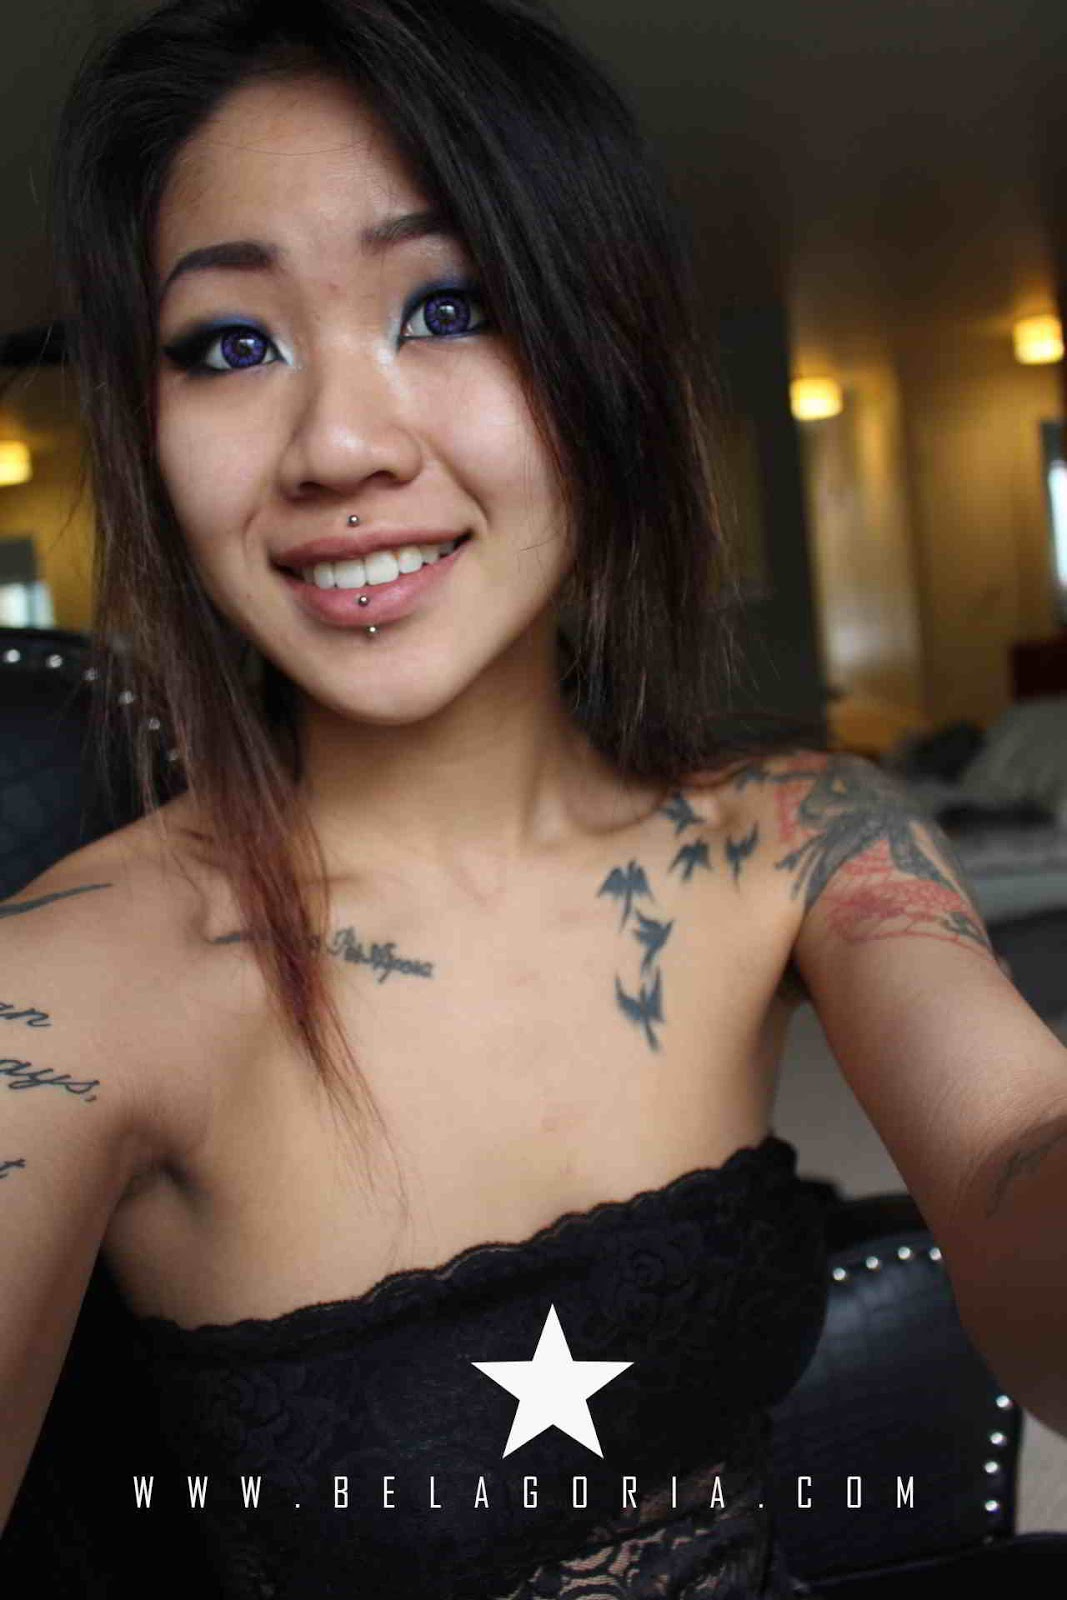 chica asiatica sonriendo, lleva tatuajes de libertad con pajaros